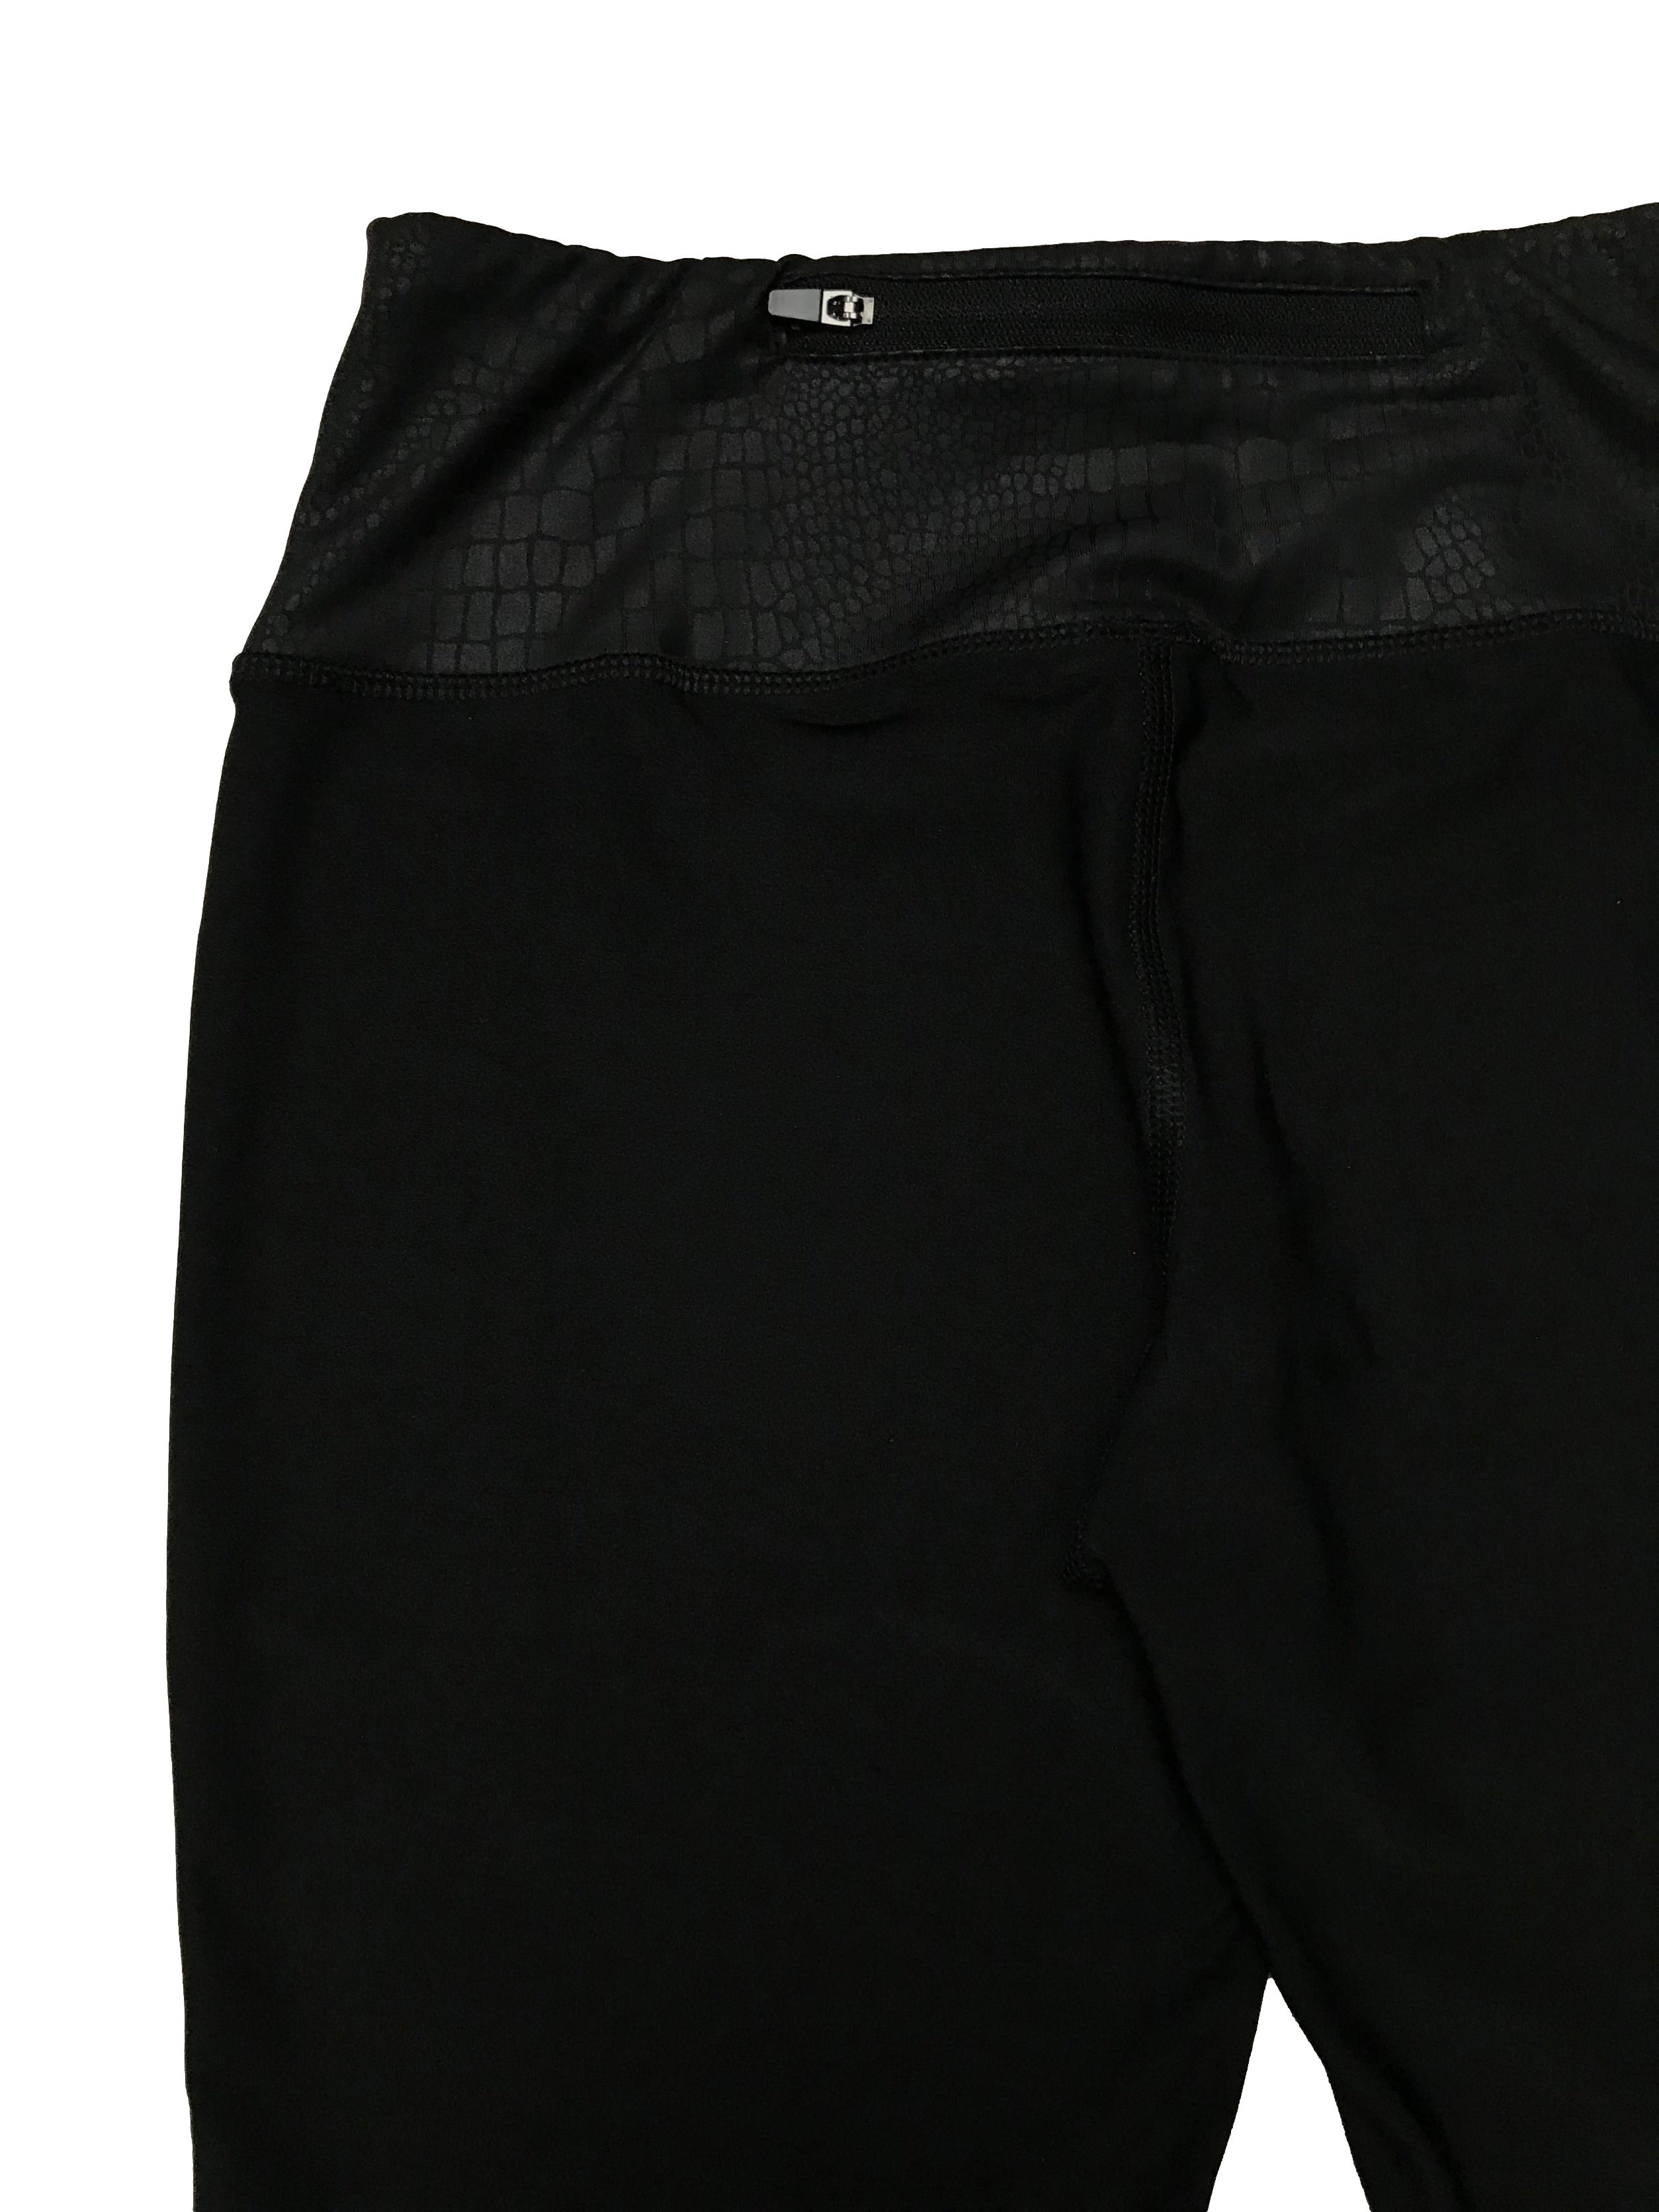 Legging deportiva RBX, negra con detalles neón y textura pitón al tono, tiene un cierre posterior en la pretina, tiro medio. Largo 76cm Pretina 68cm sin estirar